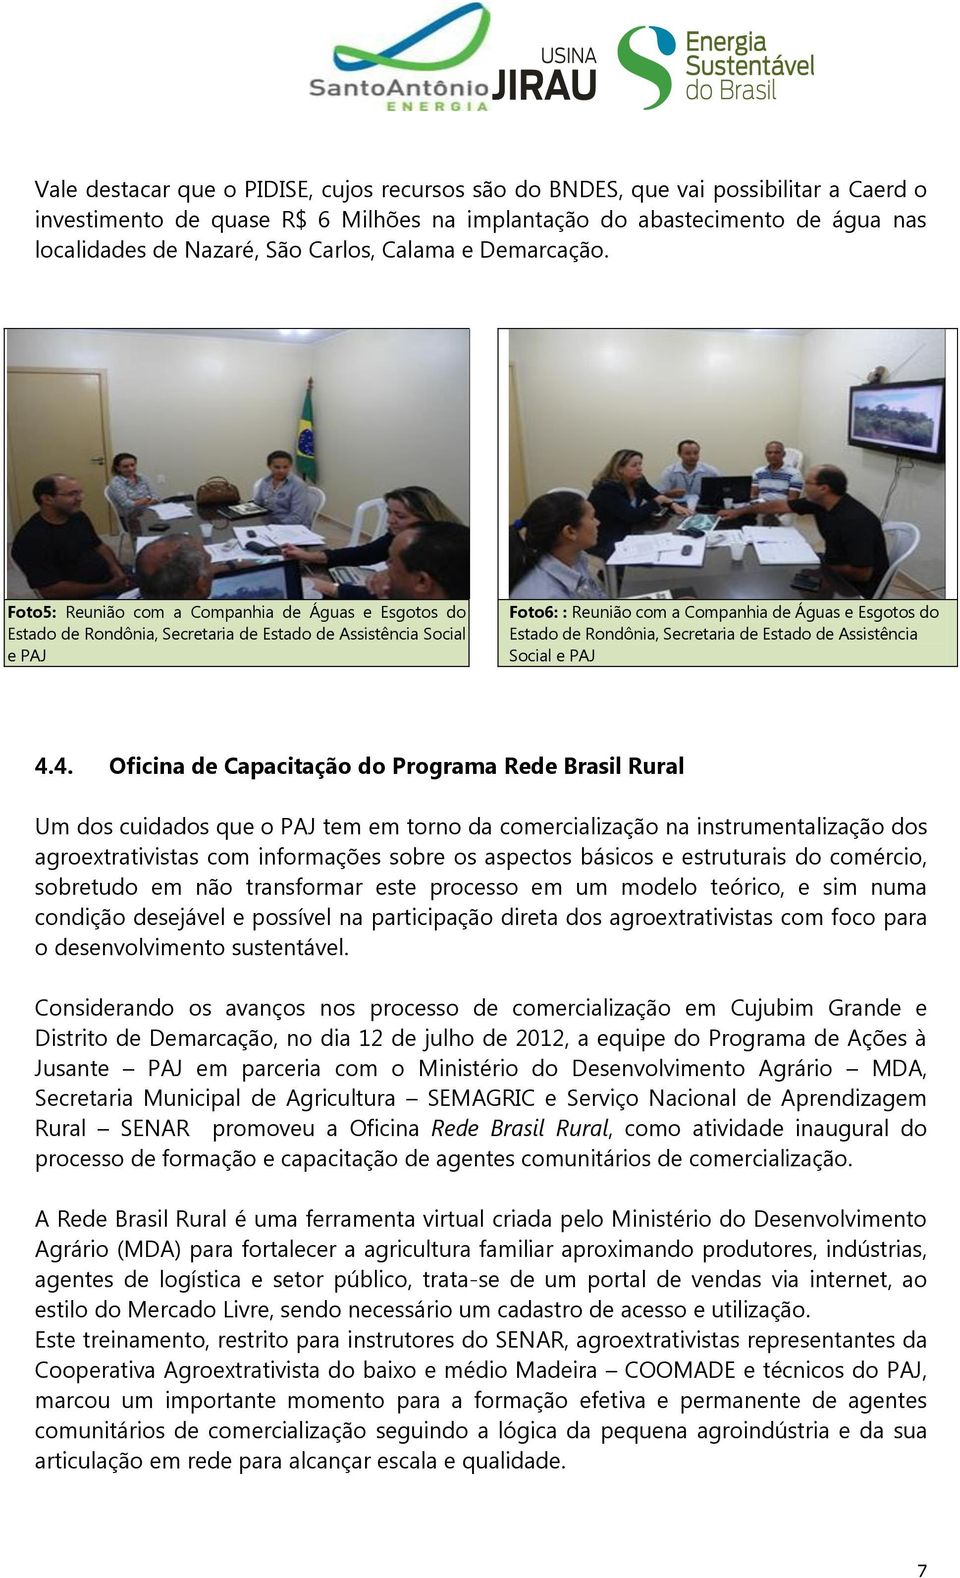 Foto5: Reunião com a Companhia de Águas e Esgotos do Estado de Rondônia, Secretaria de Estado de Assistência Social e PAJ Foto6: : Reunião com a Companhia de Águas e Esgotos do Estado de Rondônia,